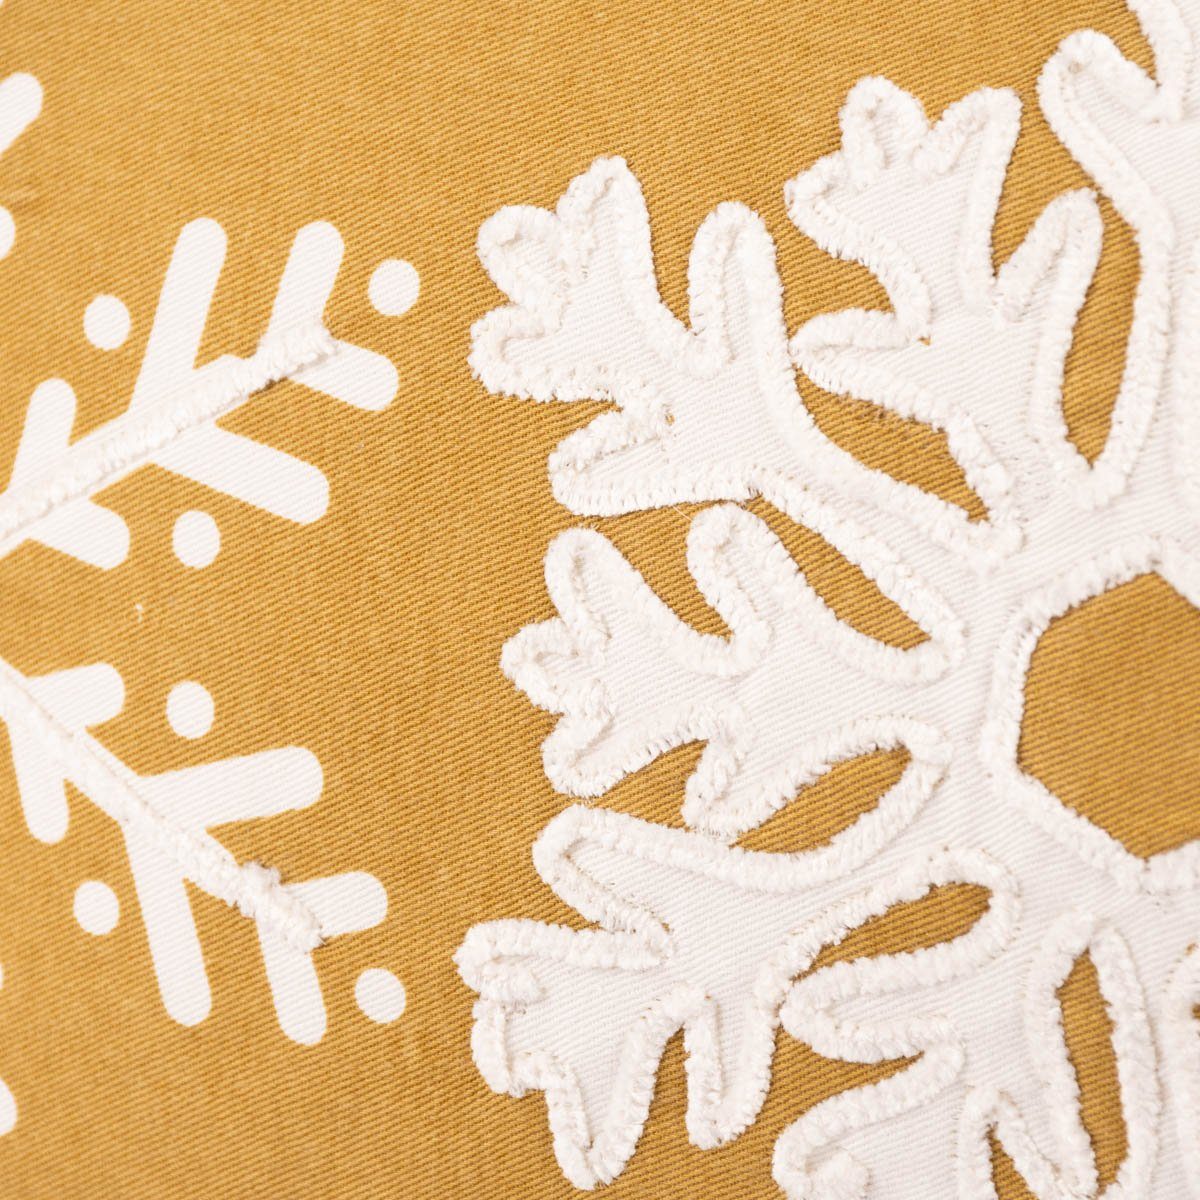 Schneeflocken 30 Deko SCHÖNER Kissen ockergelb weiß aufgenähte Dekokissen Kederumrandung LEBEN.